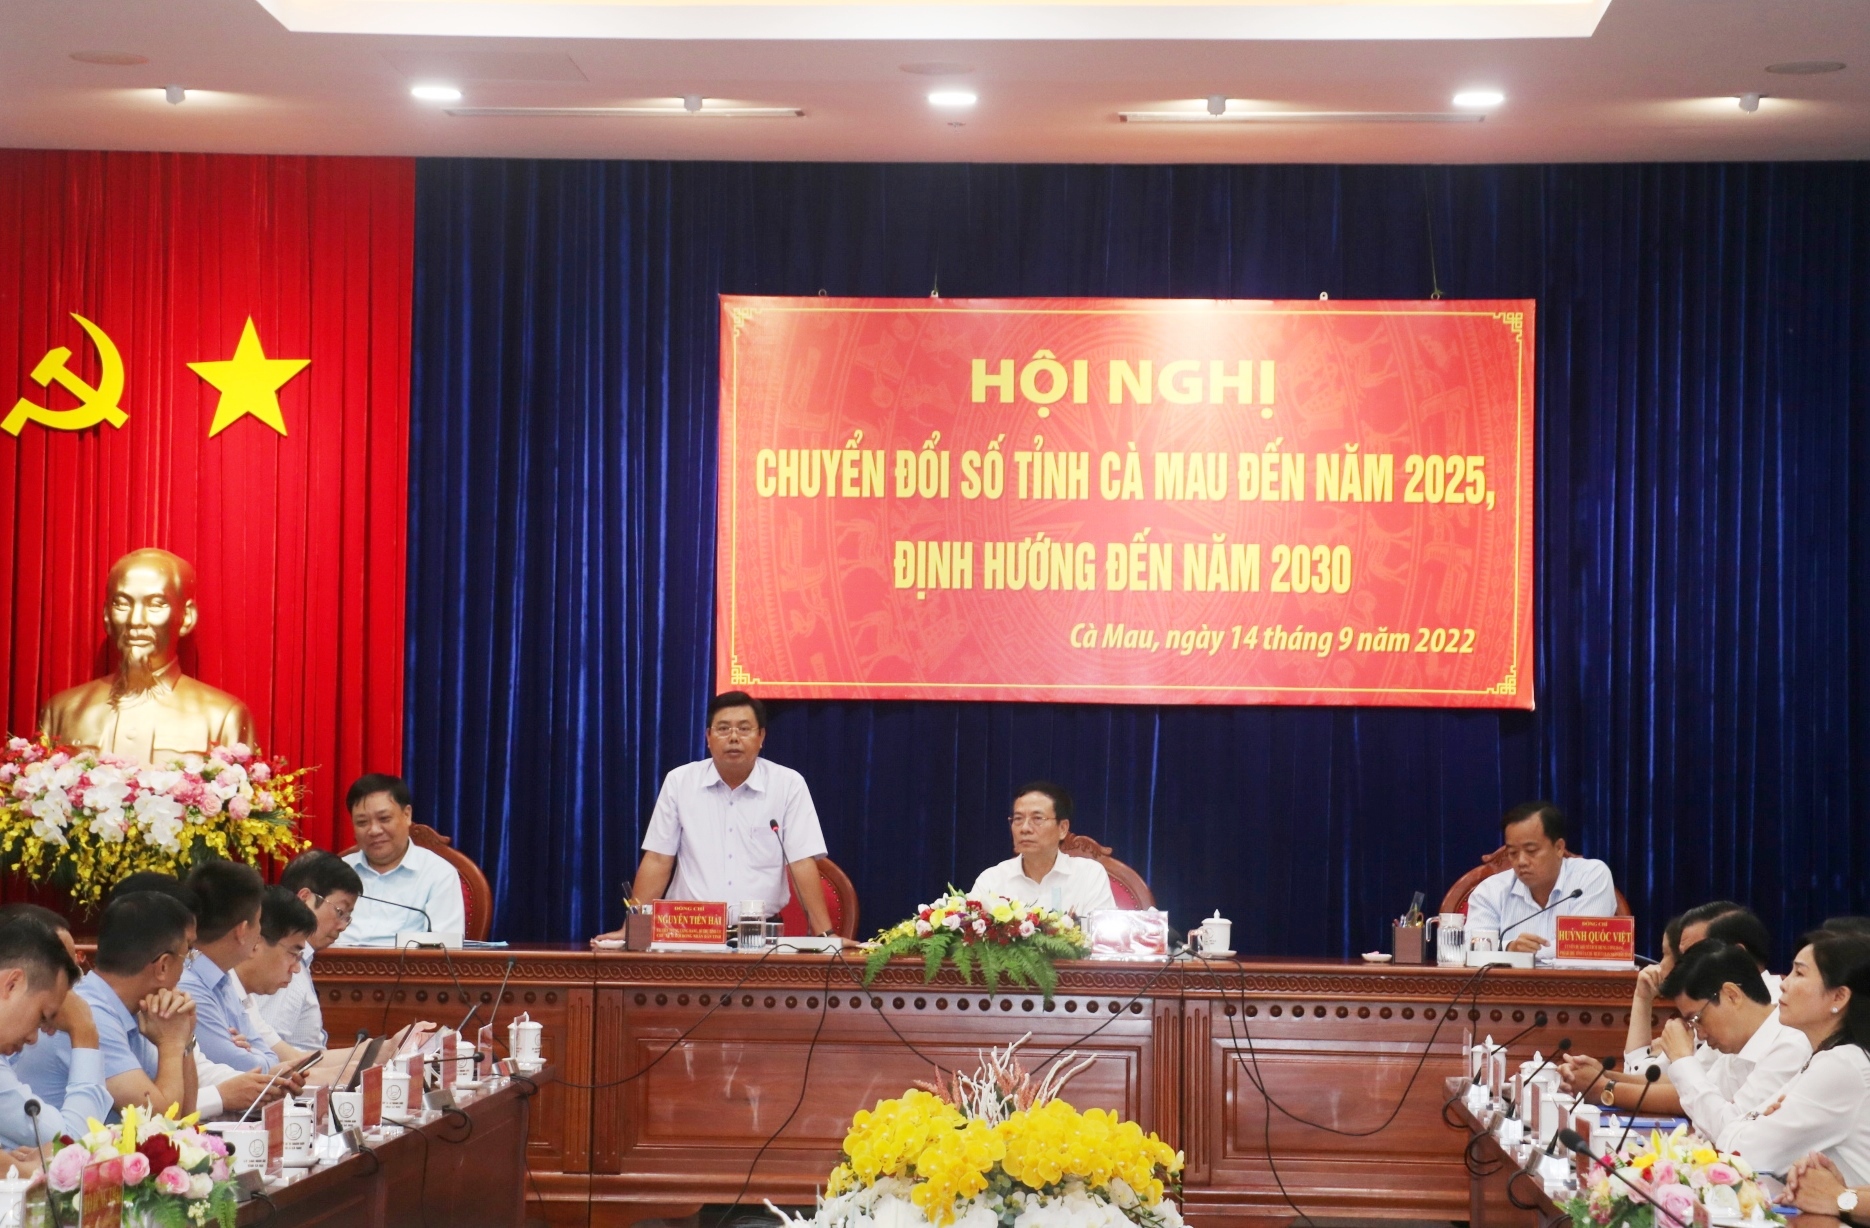 Hội nghị Chuyển đổi số tỉnh Cà Mau đến năm 2025, định hướng đến năm 2030 được tổ mức mới đây, có sự tham gia Bộ trưởng Bộ Thông tin và Truyền thông Nguyễn Mạnh Hùng